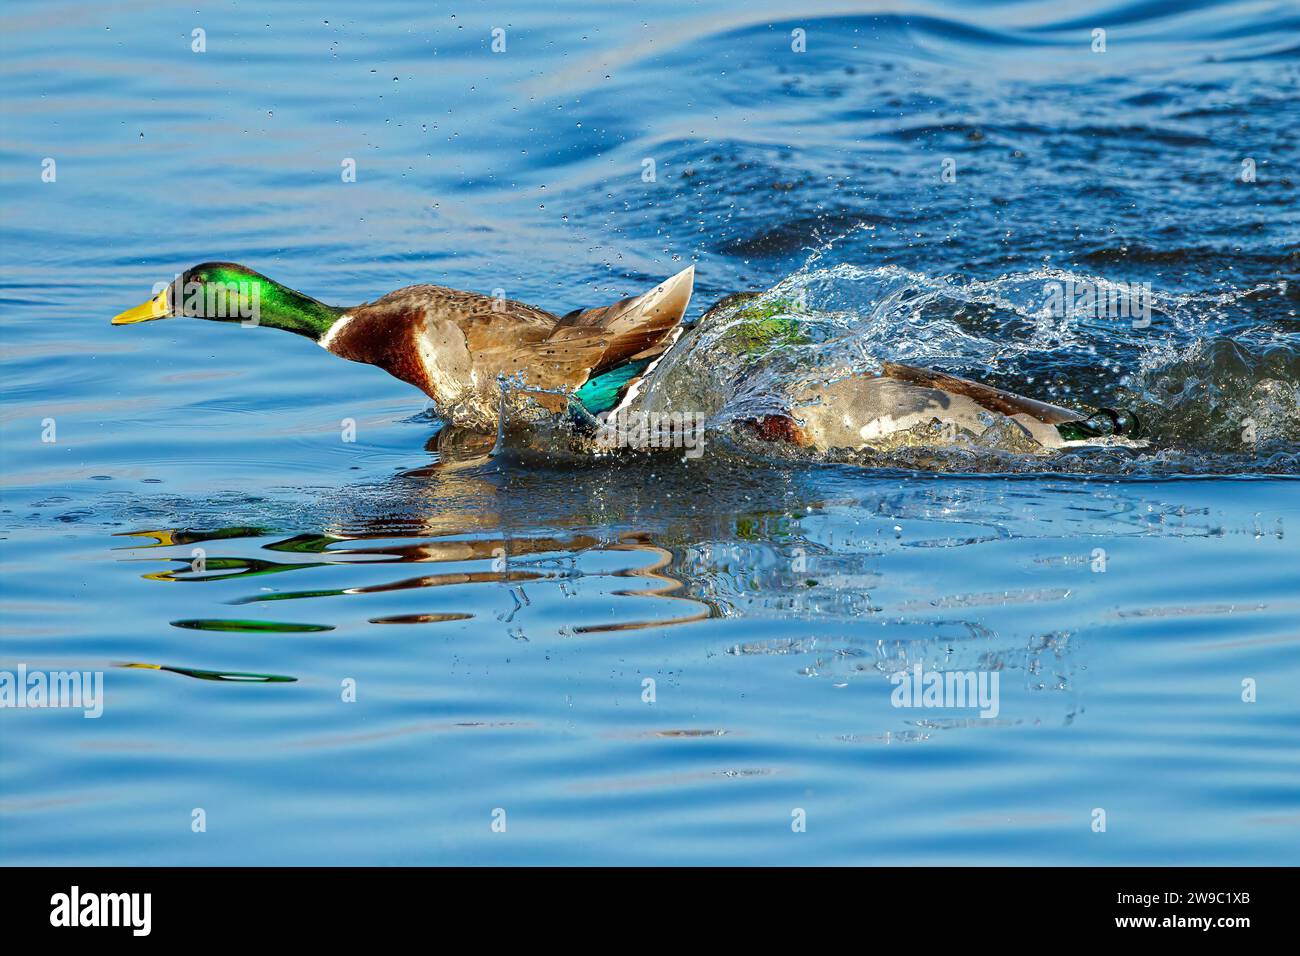 Mallard Ducks fighting with splashing water Stock Photo